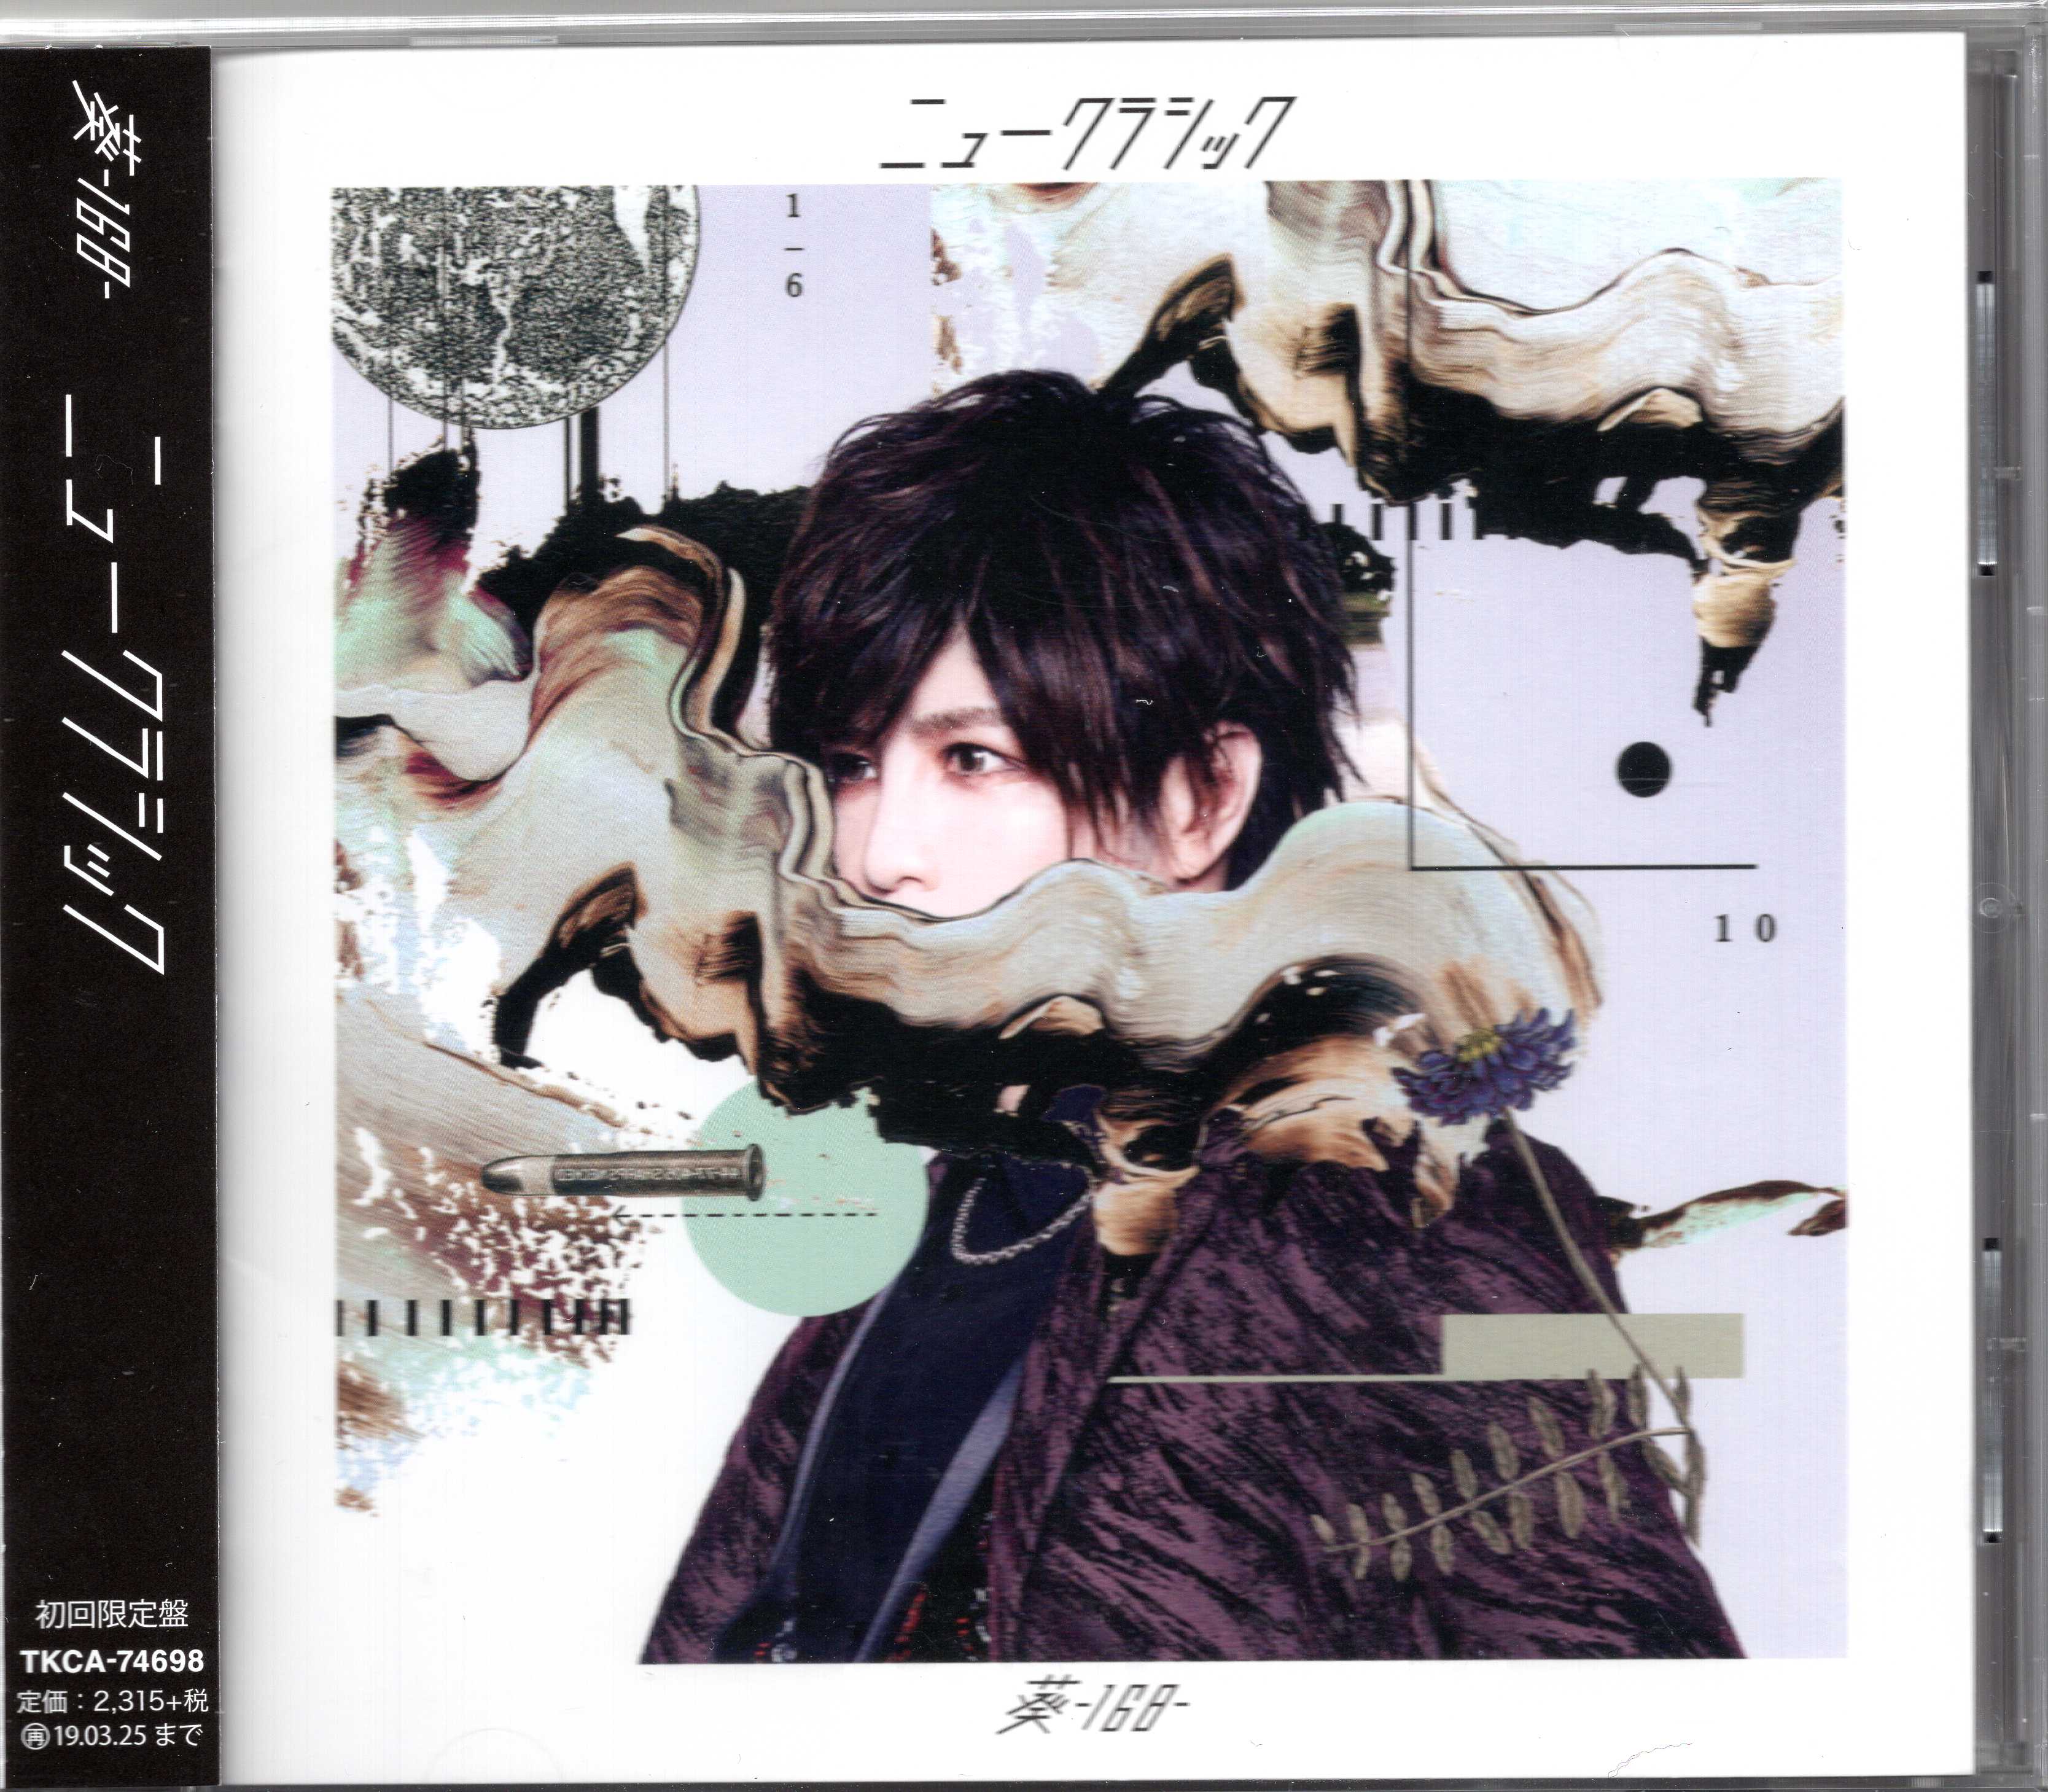 葵-168- ( アオイワンシックスティエイト )  の CD 【初回盤】ニュークラシック